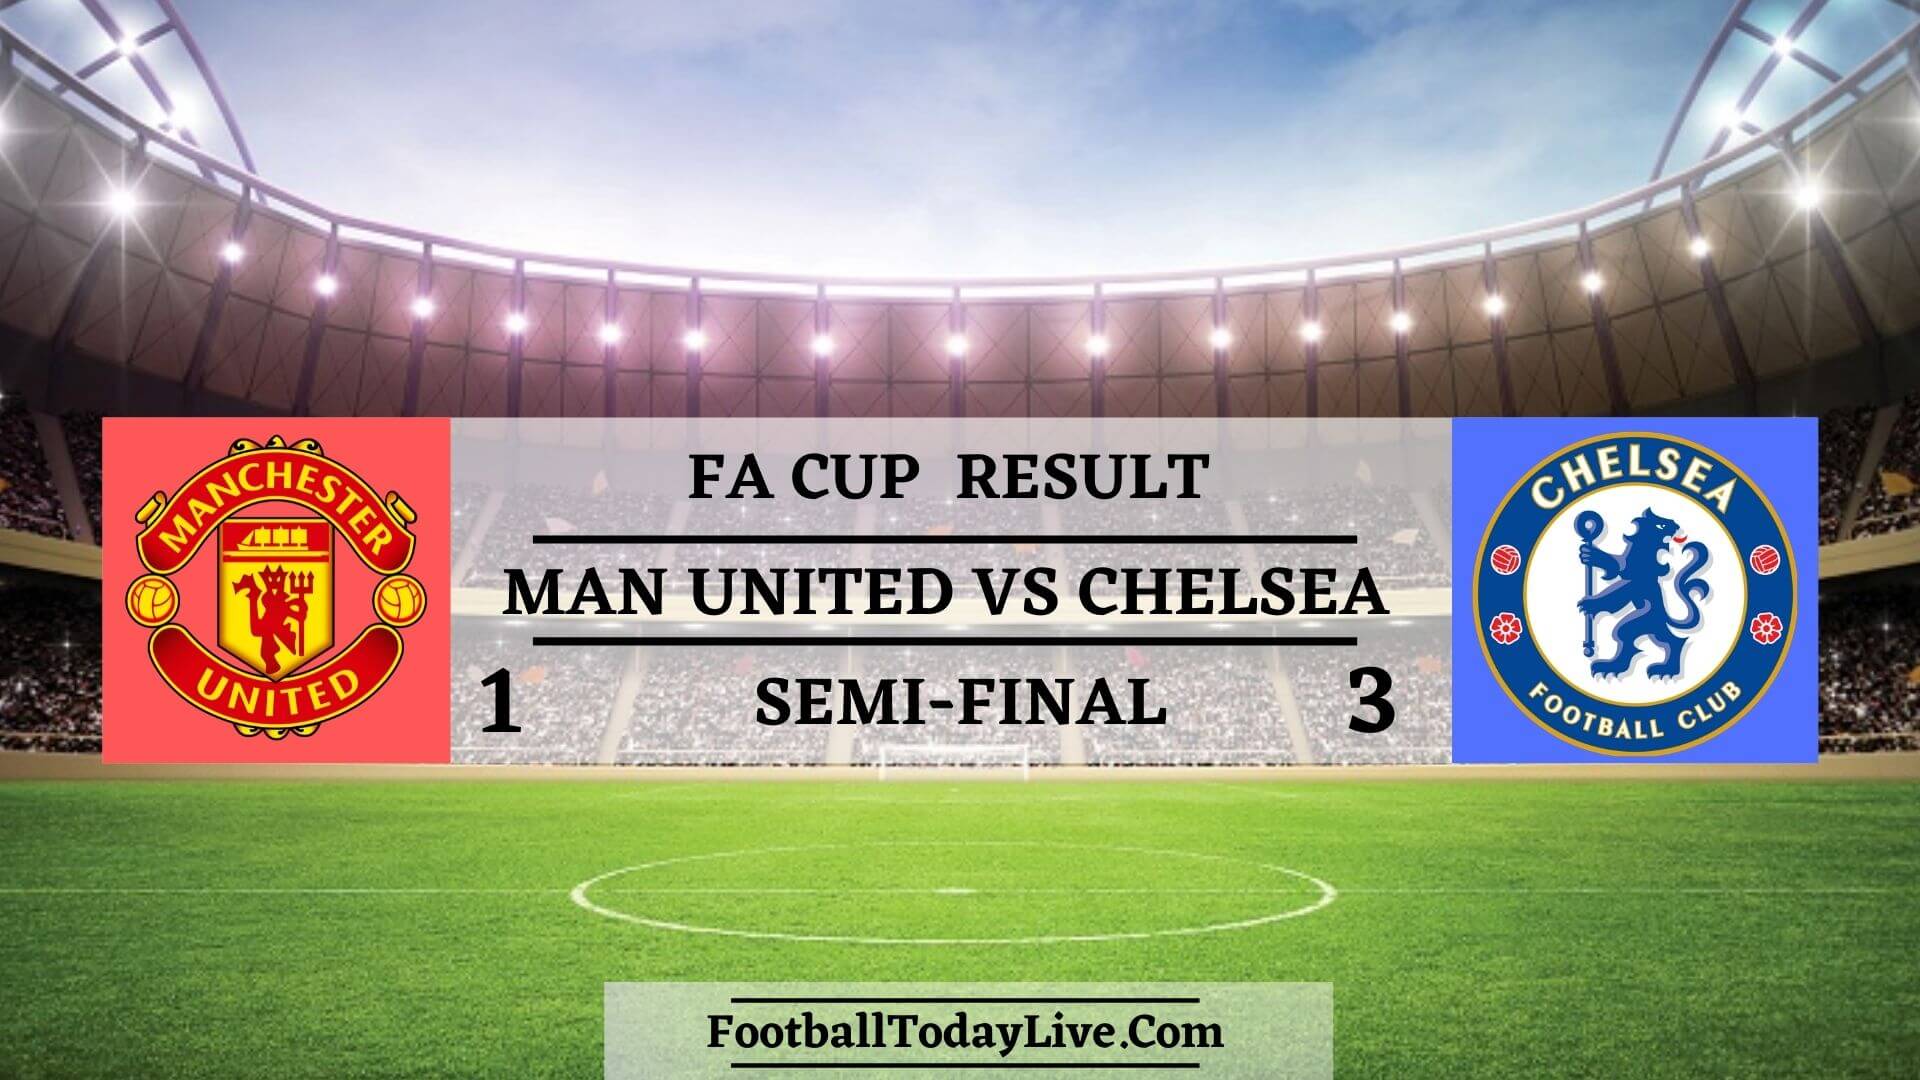 Manchester United Vs Chelsea | FA Cup Semi-Final Result 2020